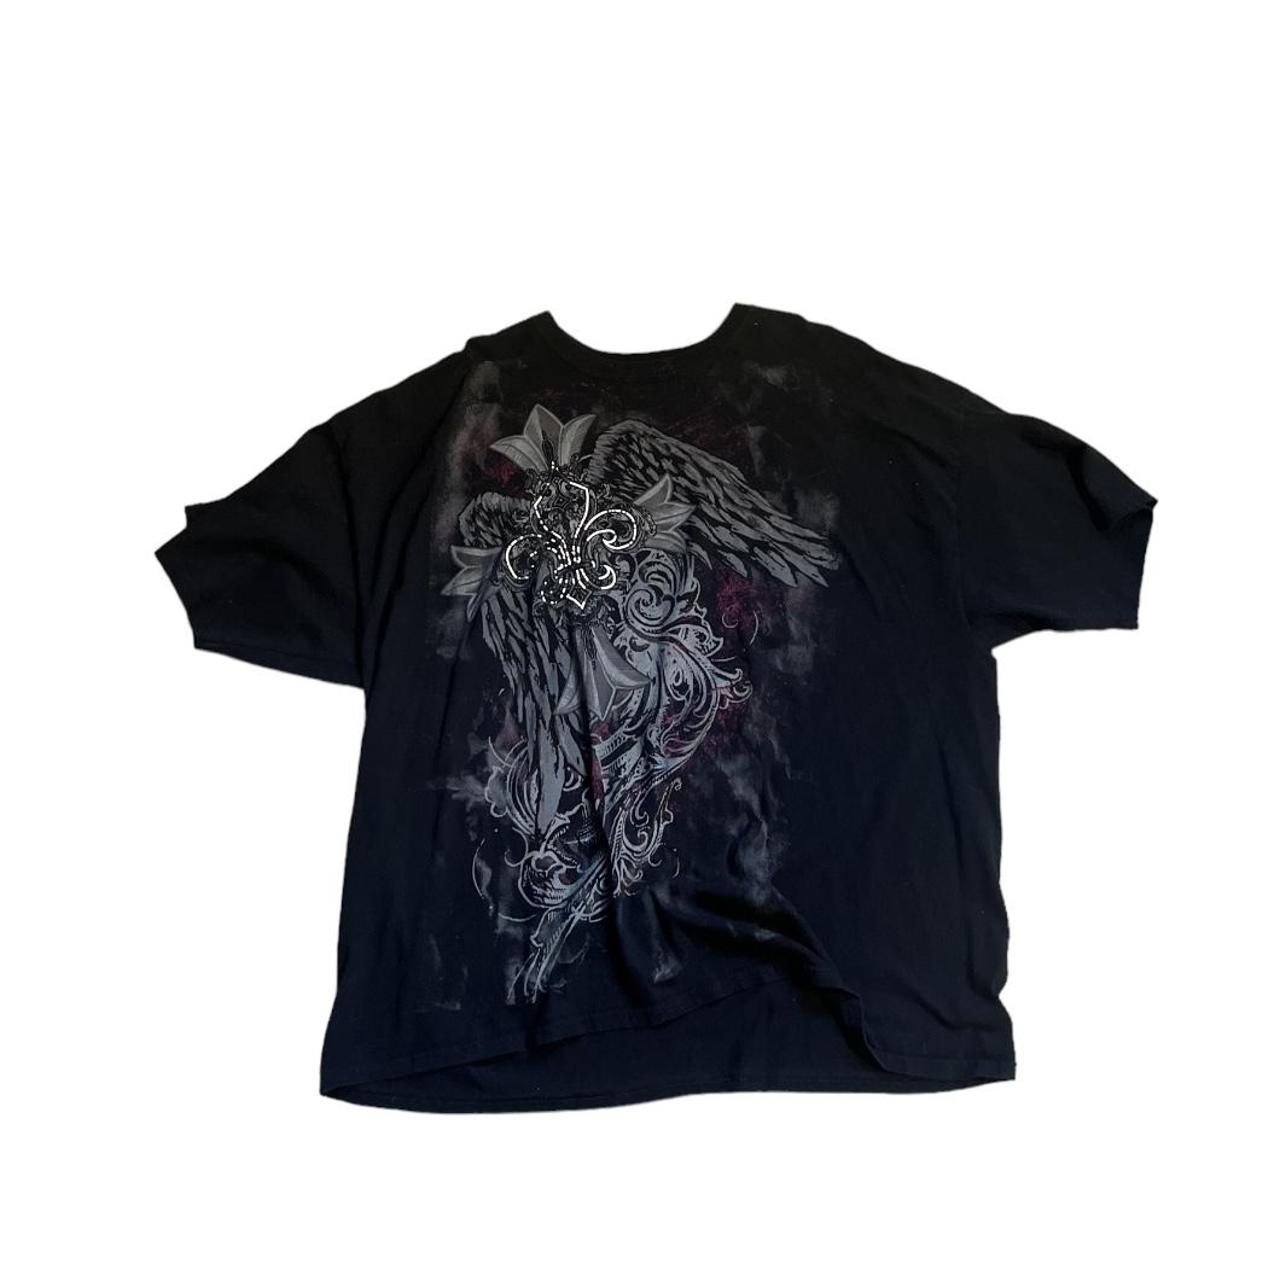 Y2K Goth Grunge Style Cross Tshirt Super Baggy... - Depop